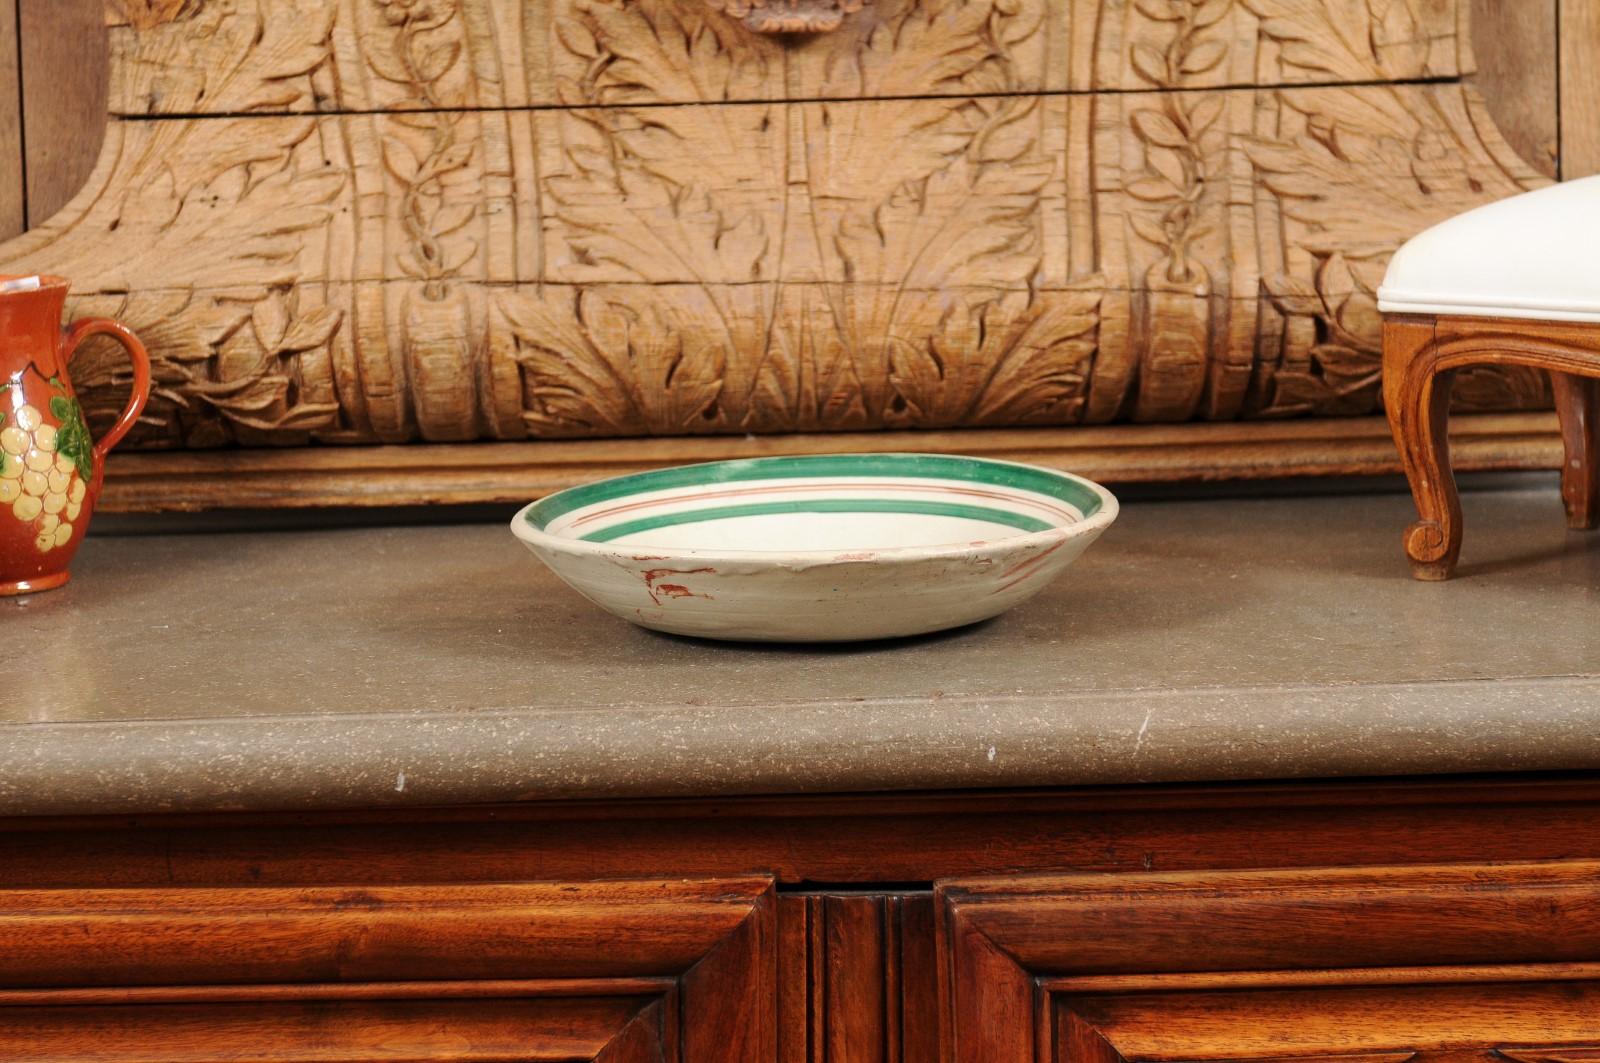 Eine italienische Keramikschale aus dem frühen 20. Jahrhundert mit Hahnmotiv und grünem Rand. Diese in den ersten Jahren des 20. Jahrhunderts in Italien hergestellte Keramikschale bezaubert durch die archaische Darstellung eines Hahns im Profil.